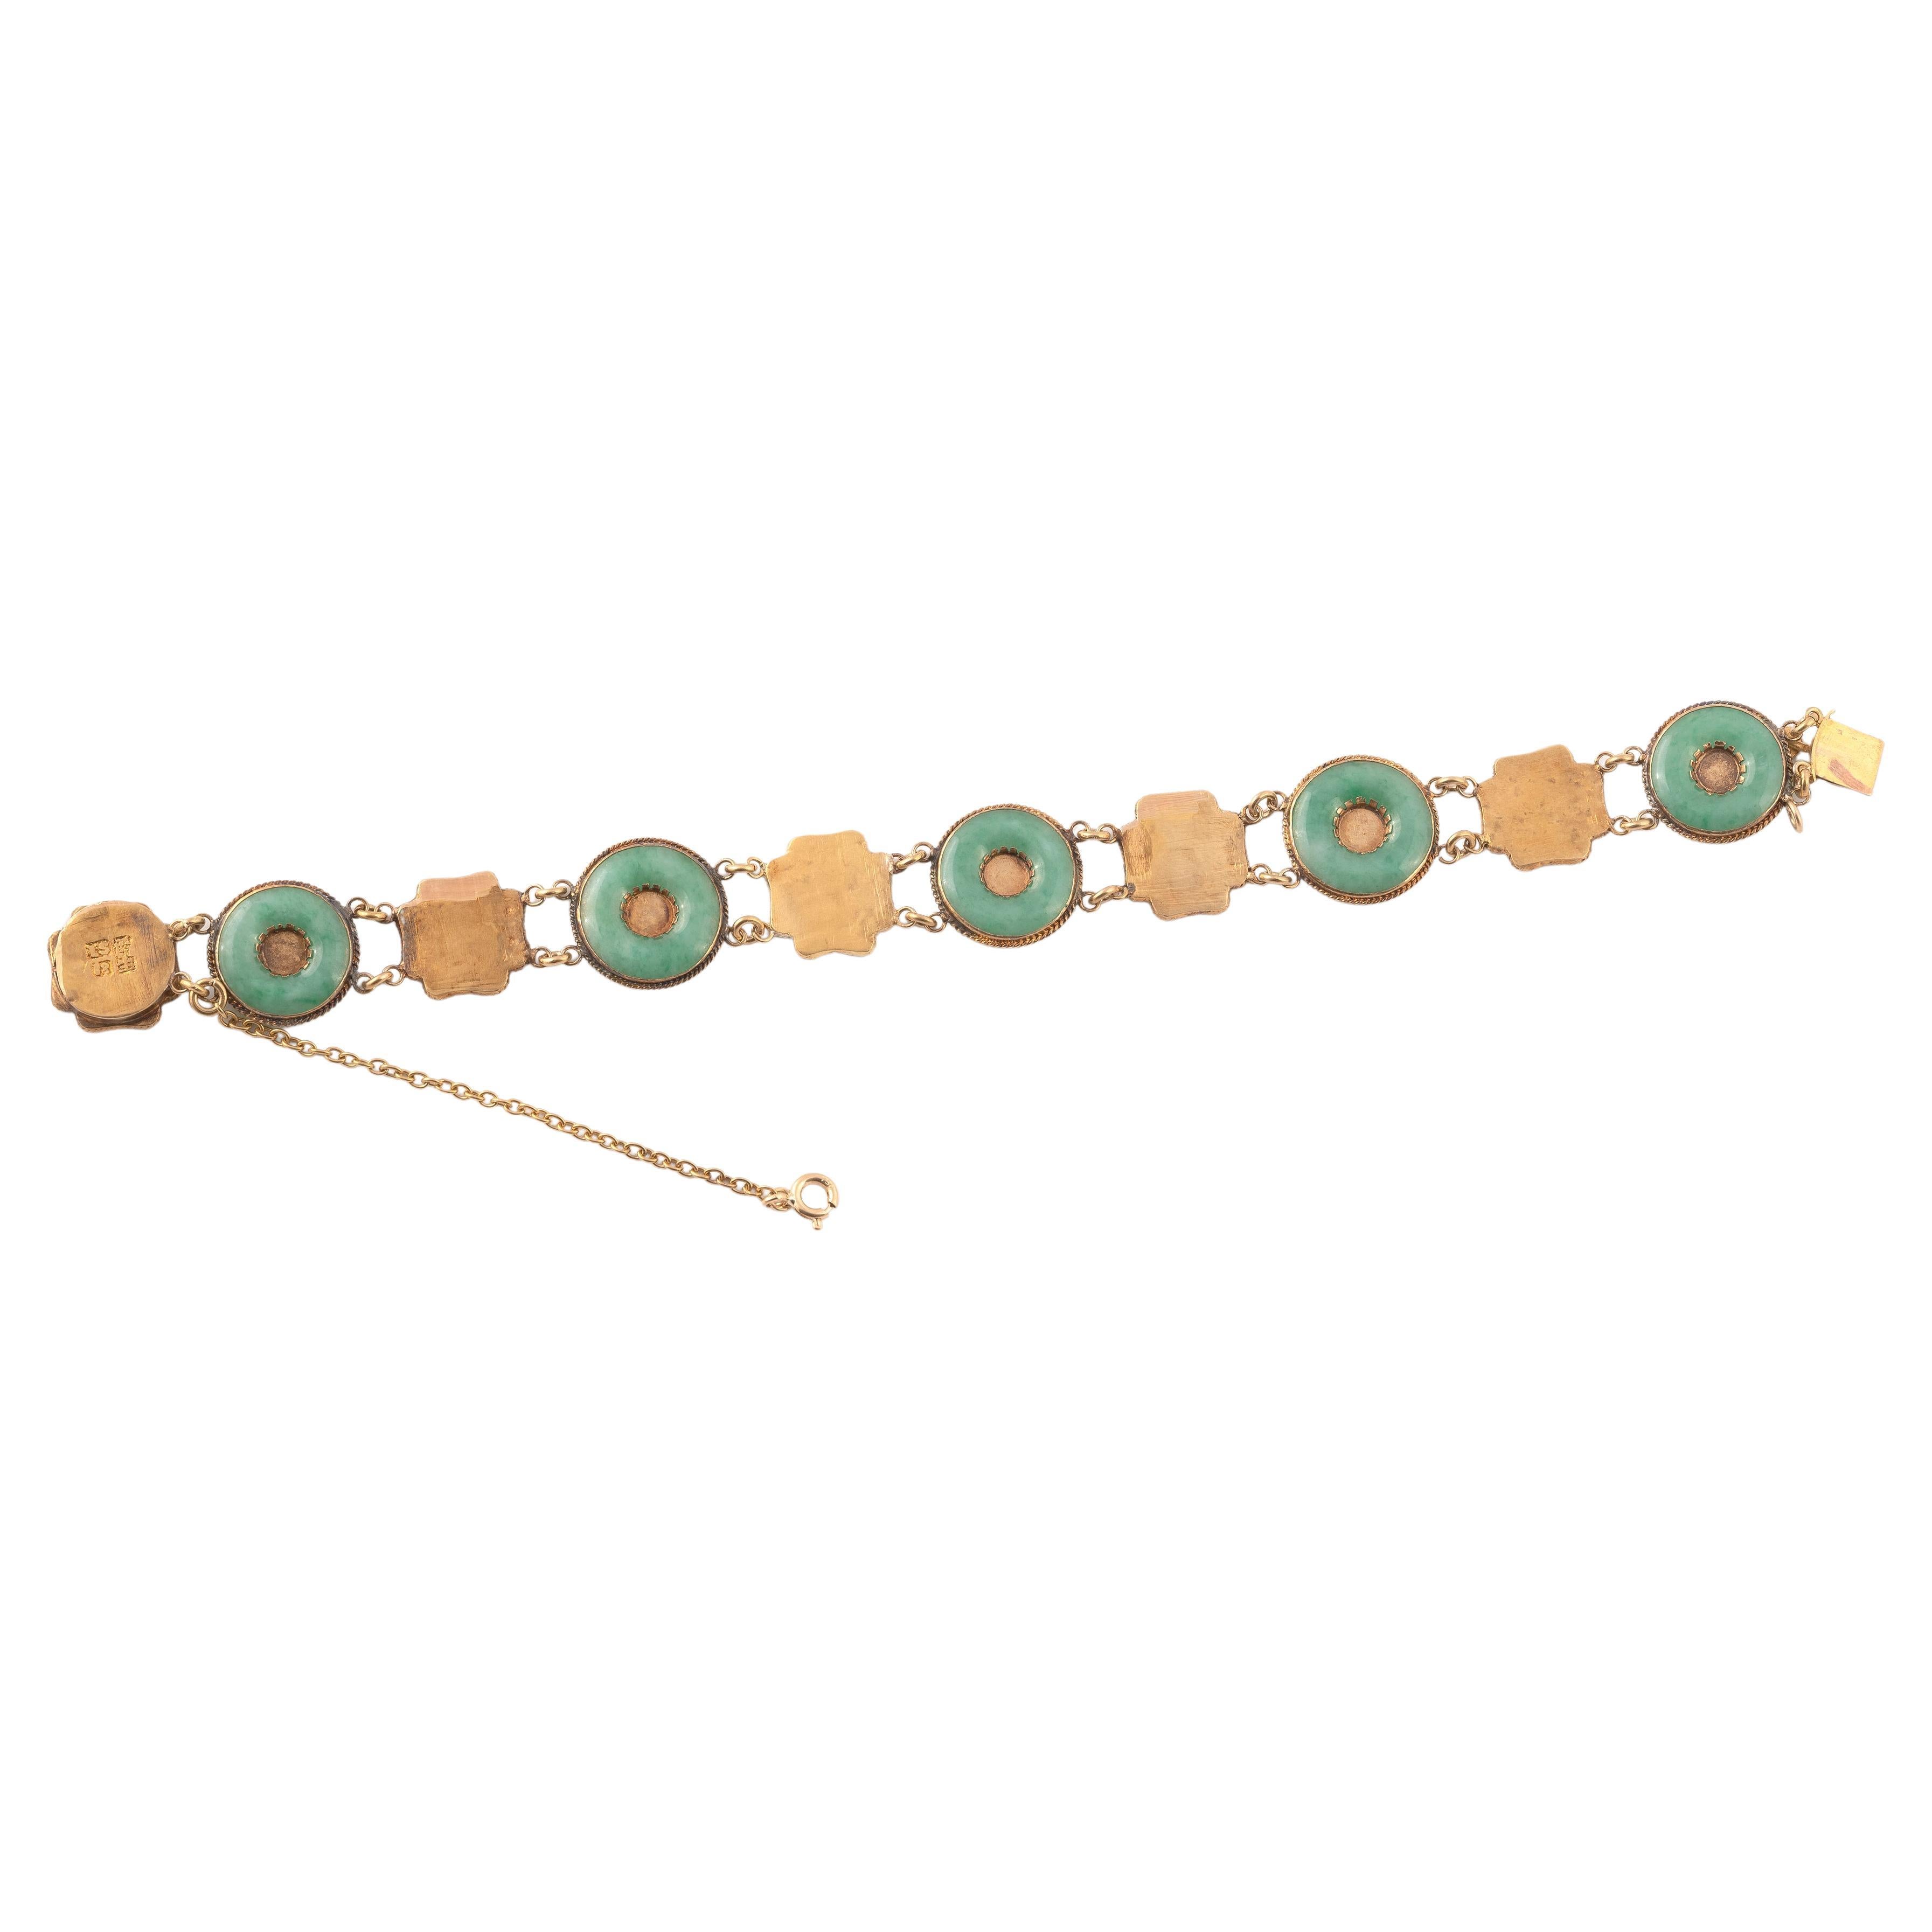 Flexibles Armband, bestehend aus Jadescheiben, die sich mit quadratischen Gliedern aus guillochiertem Gelbgold abwechseln, auf denen chinesische Schriftzeichen zu sehen sind. Länge: 19,5 cm. Gewicht: 14,8 g.